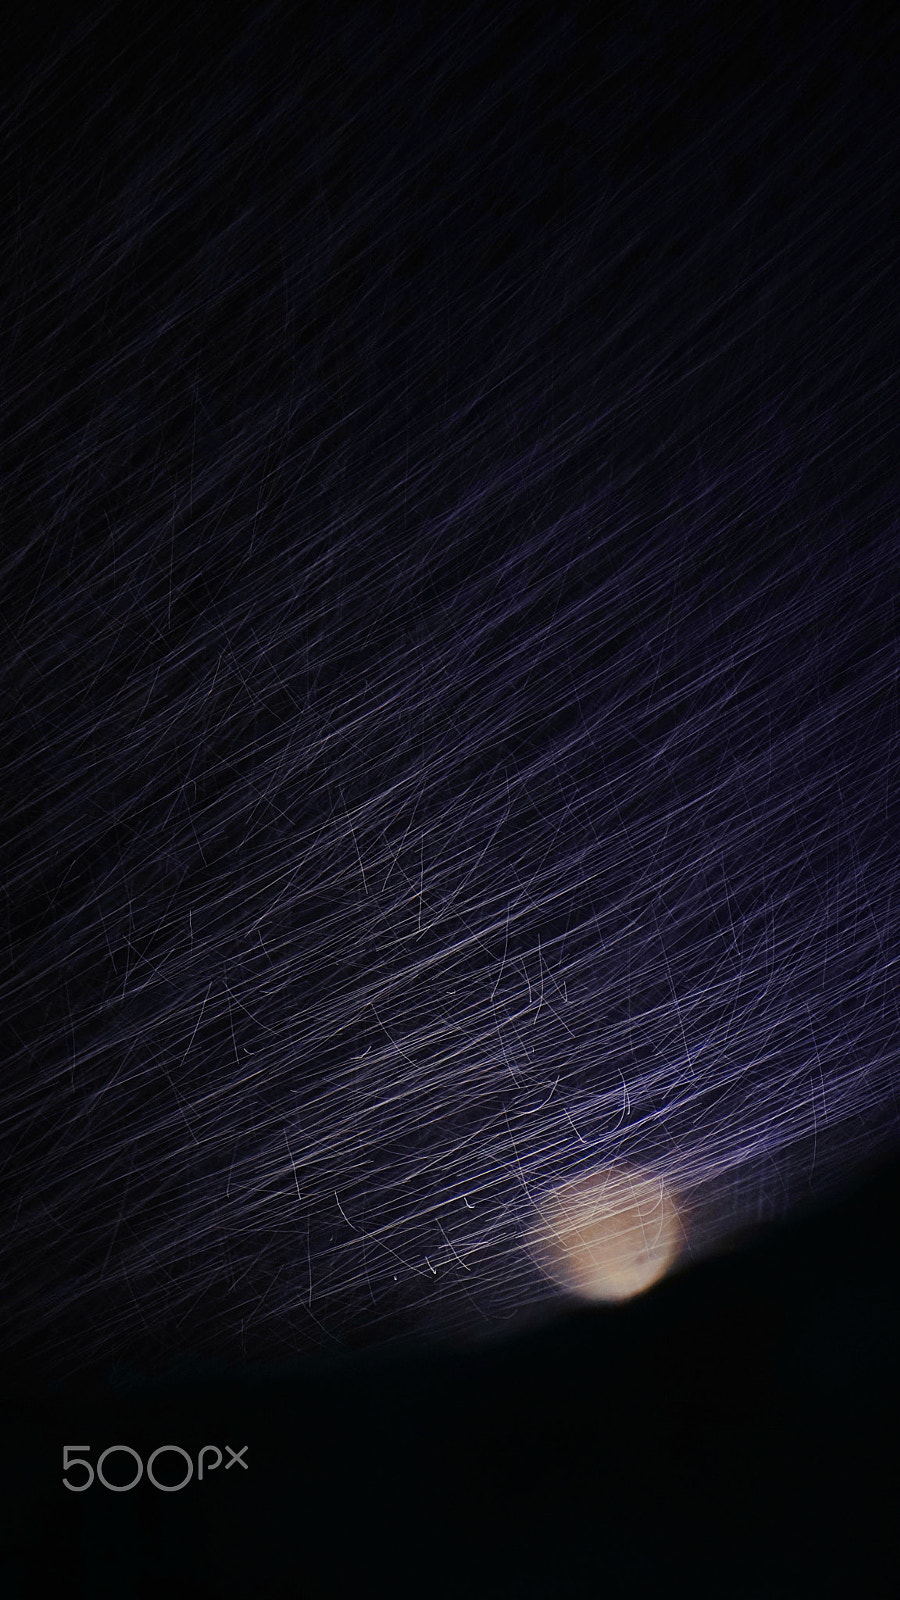 Sony a6300 sample photo. Rainy moon photography